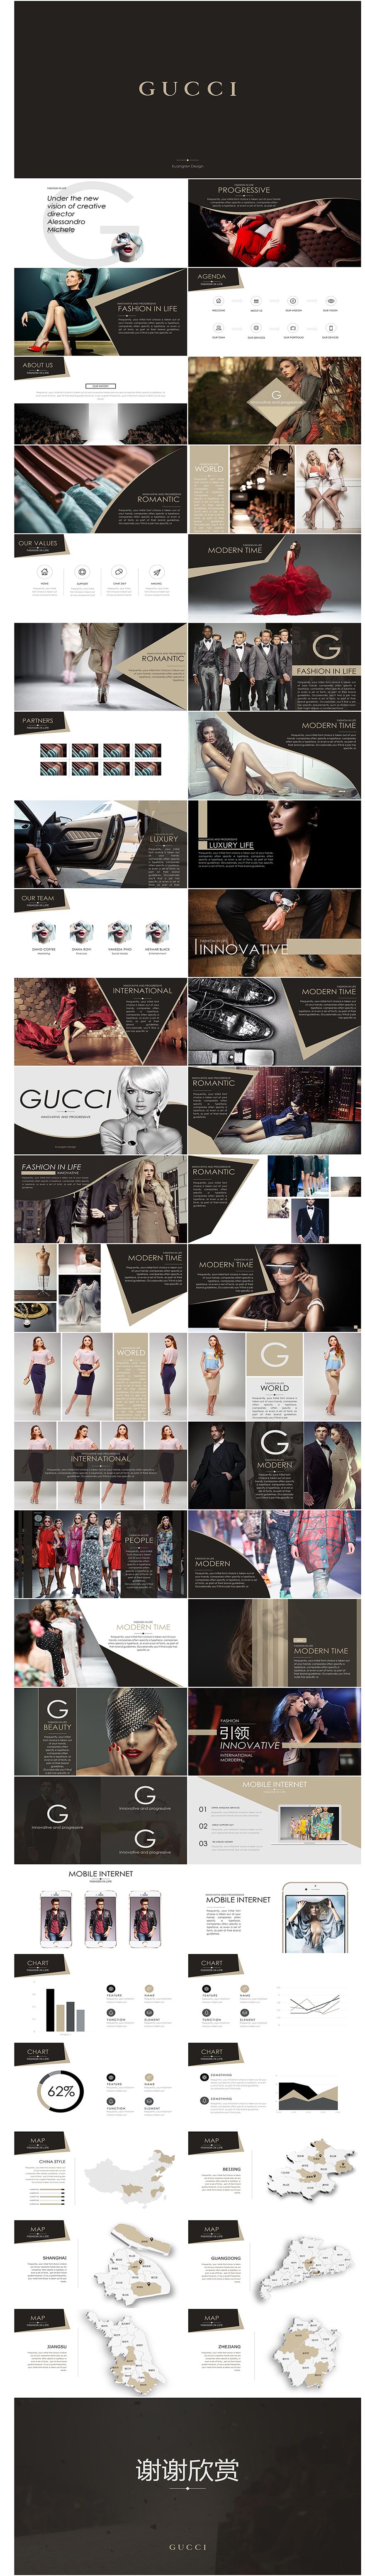 古驰gucci风格高端奢侈品化妆品珠宝服装电子画册ppt模板